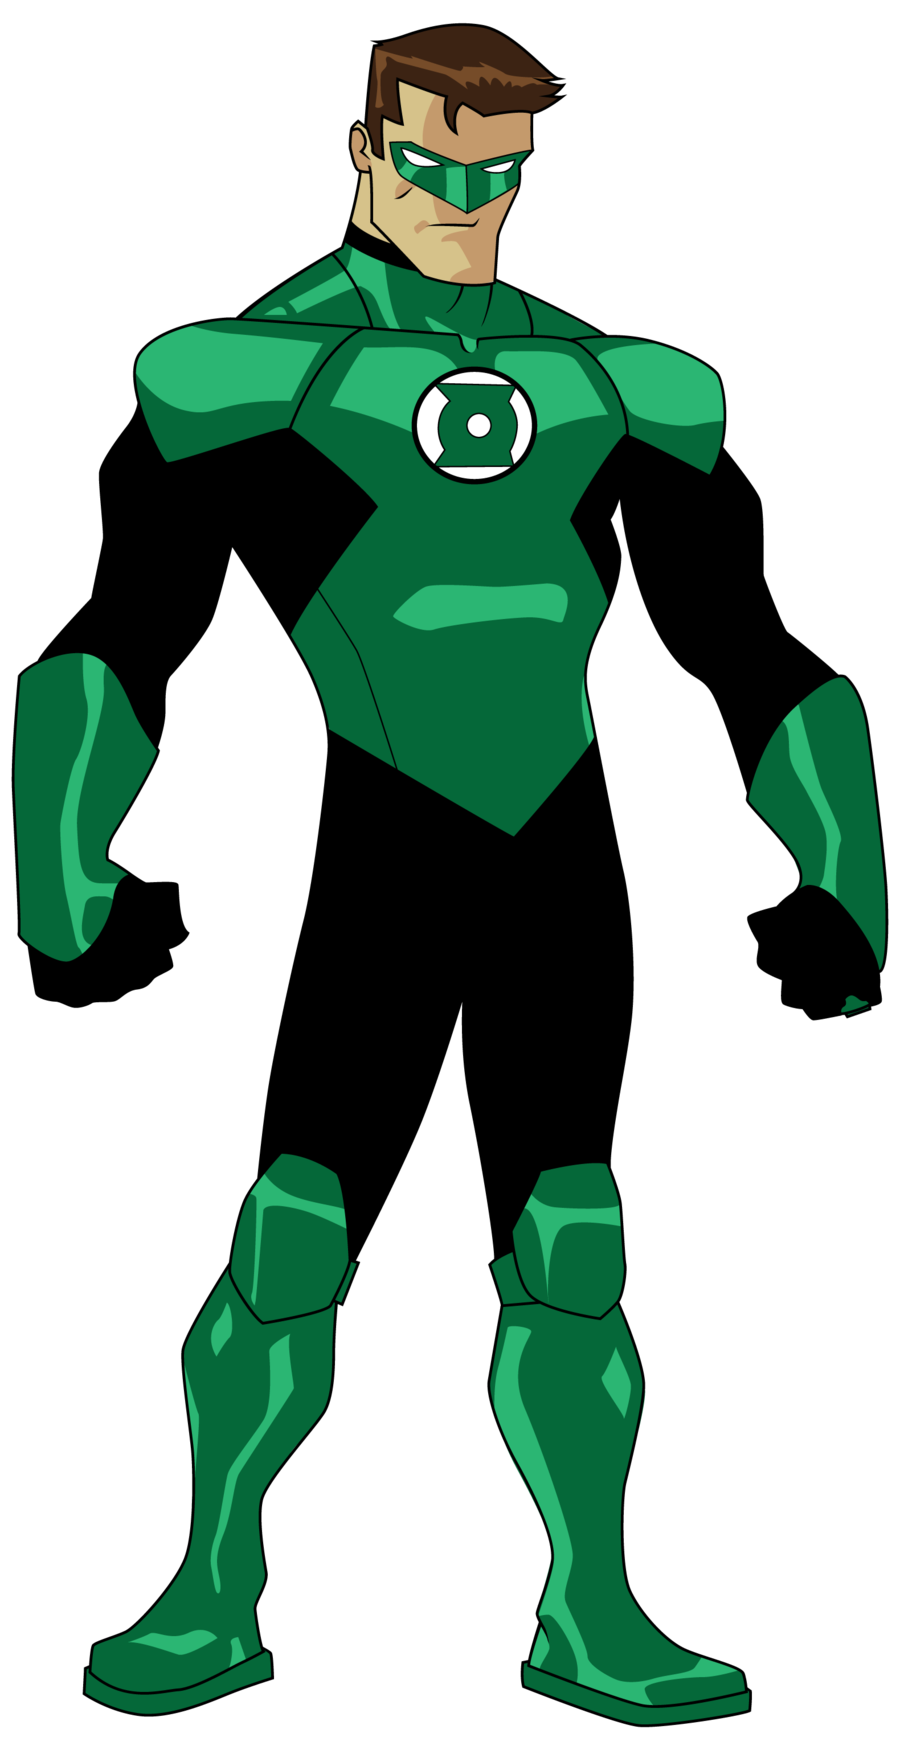 Chubeto S Green Lantern By Theetownhero On Deviantart